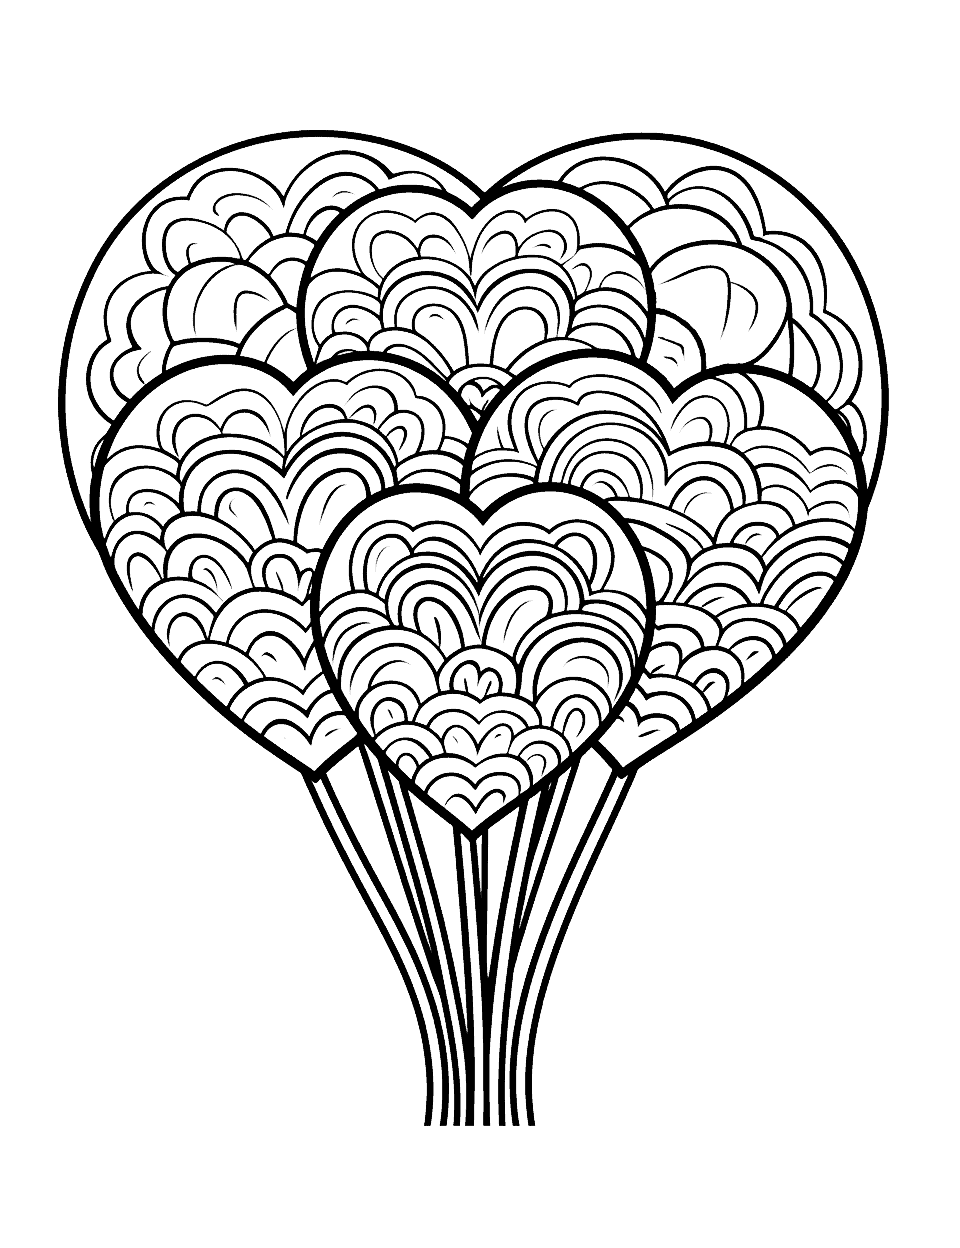 Heart Lollipops Coloring Page - Yummy heart-shaped lollipops.